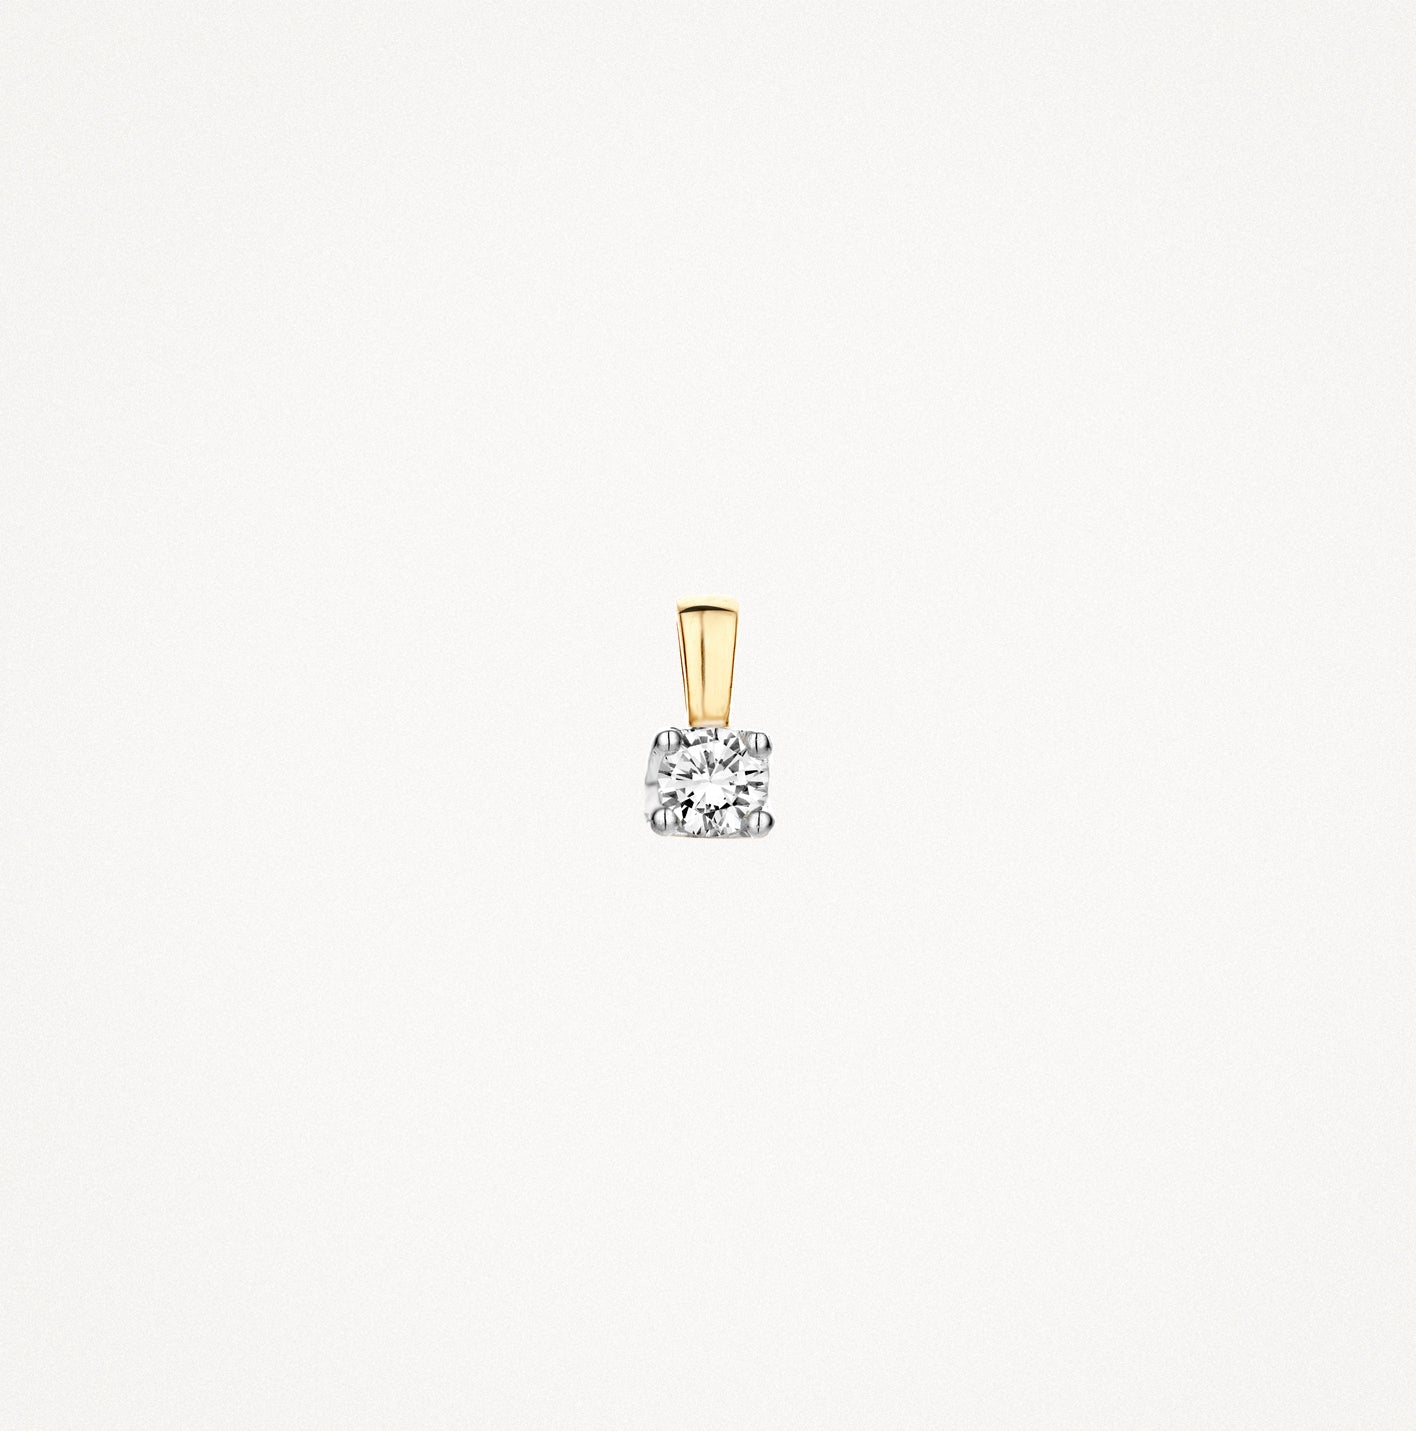 Diamond pendant 6602BDI - 14k Yellow and white gold